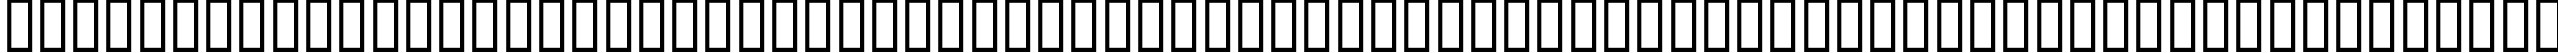 Пример написания английского алфавита шрифтом P22 Michelangelo Extras